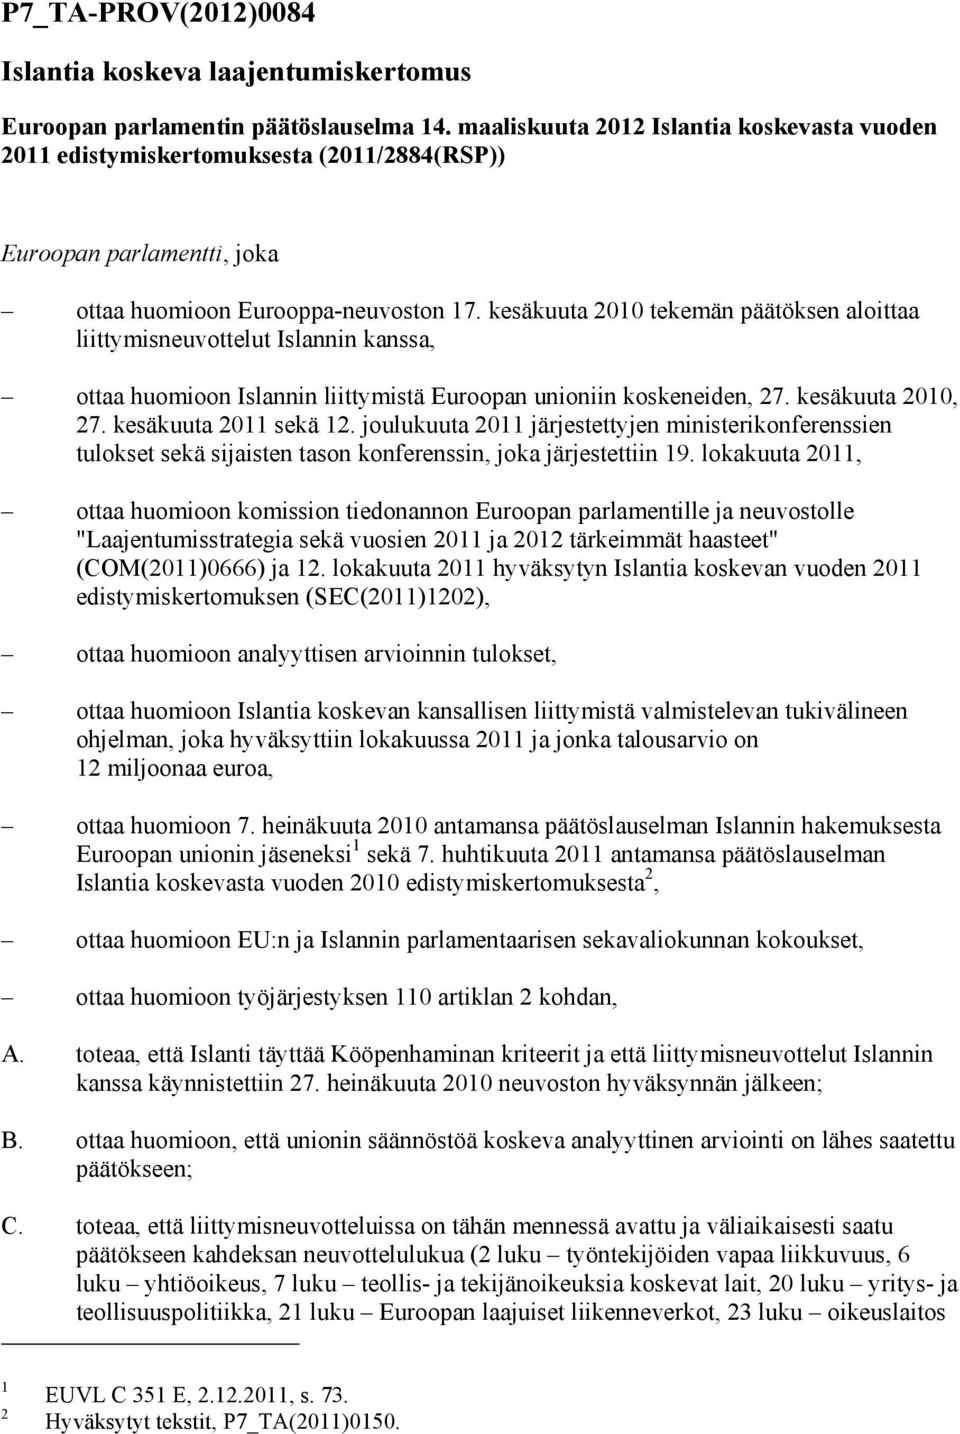 kesäkuuta 2010 tekemän päätöksen aloittaa liittymisneuvottelut Islannin kanssa, ottaa huomioon Islannin liittymistä Euroopan unioniin koskeneiden, 27. kesäkuuta 2010, 27. kesäkuuta 2011 sekä 12.